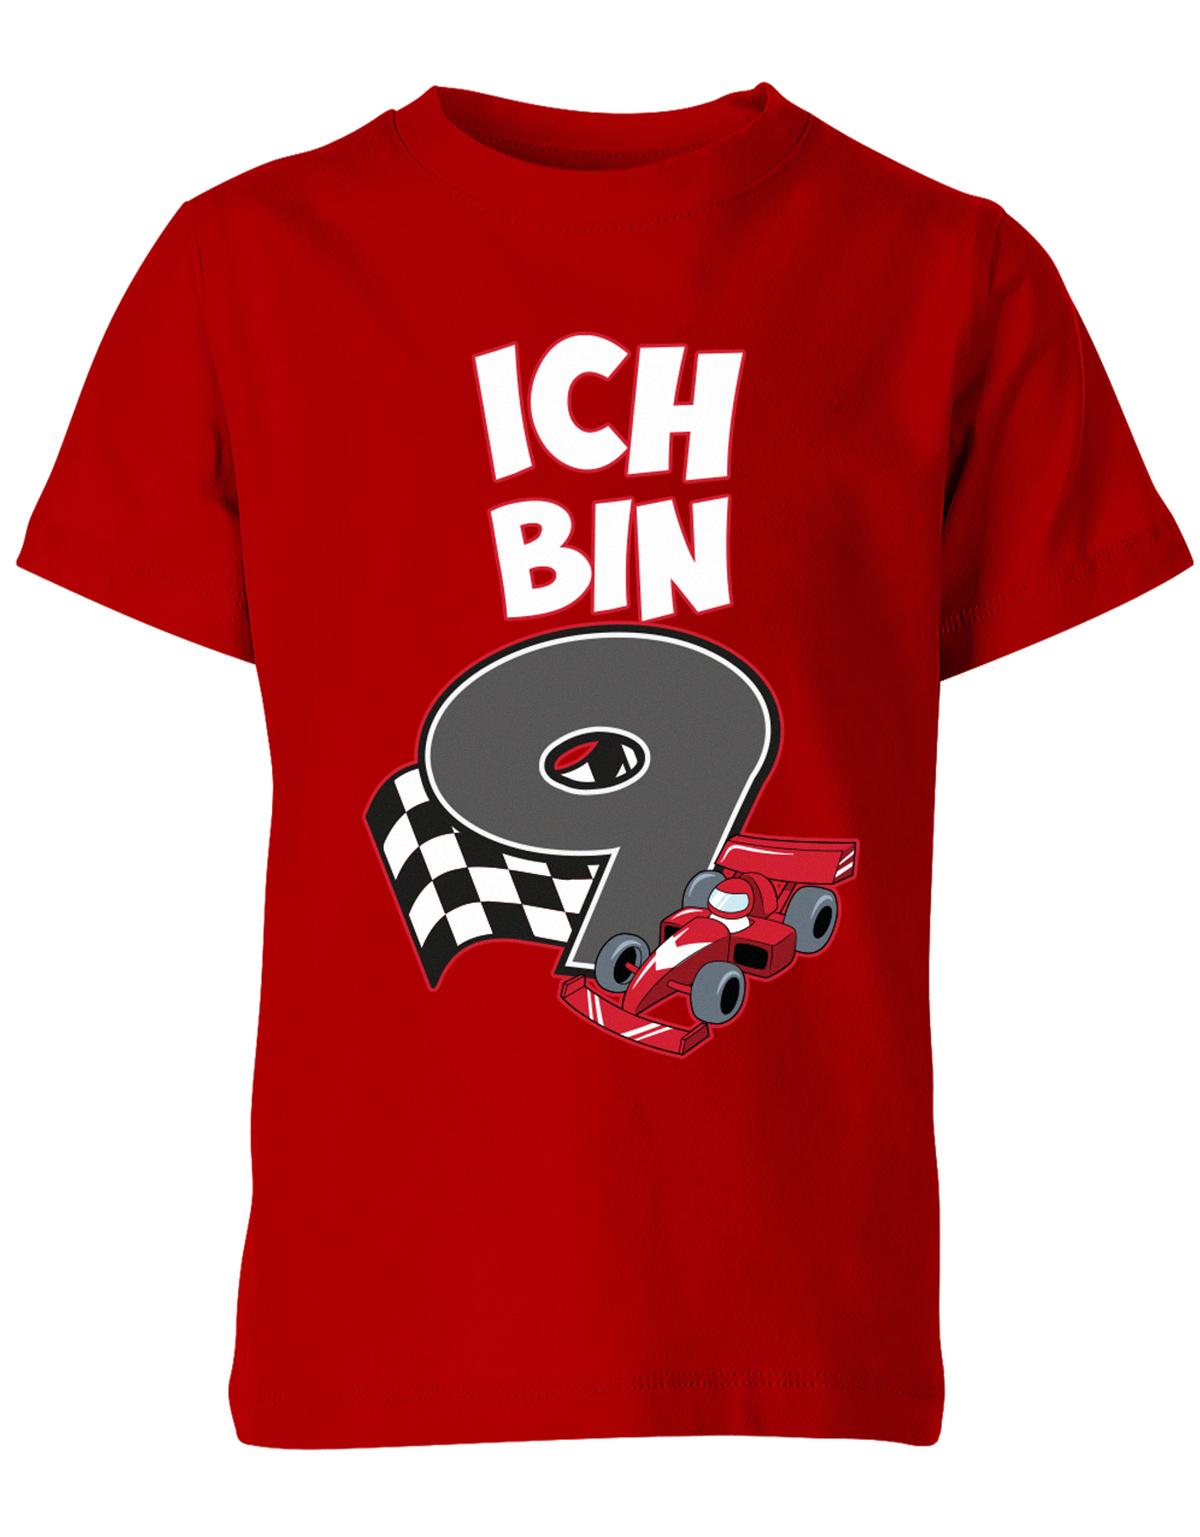 ich-bin-9-autorennen-rennwagen-geburtstag-rennfahrer-kinder-shirt-rot